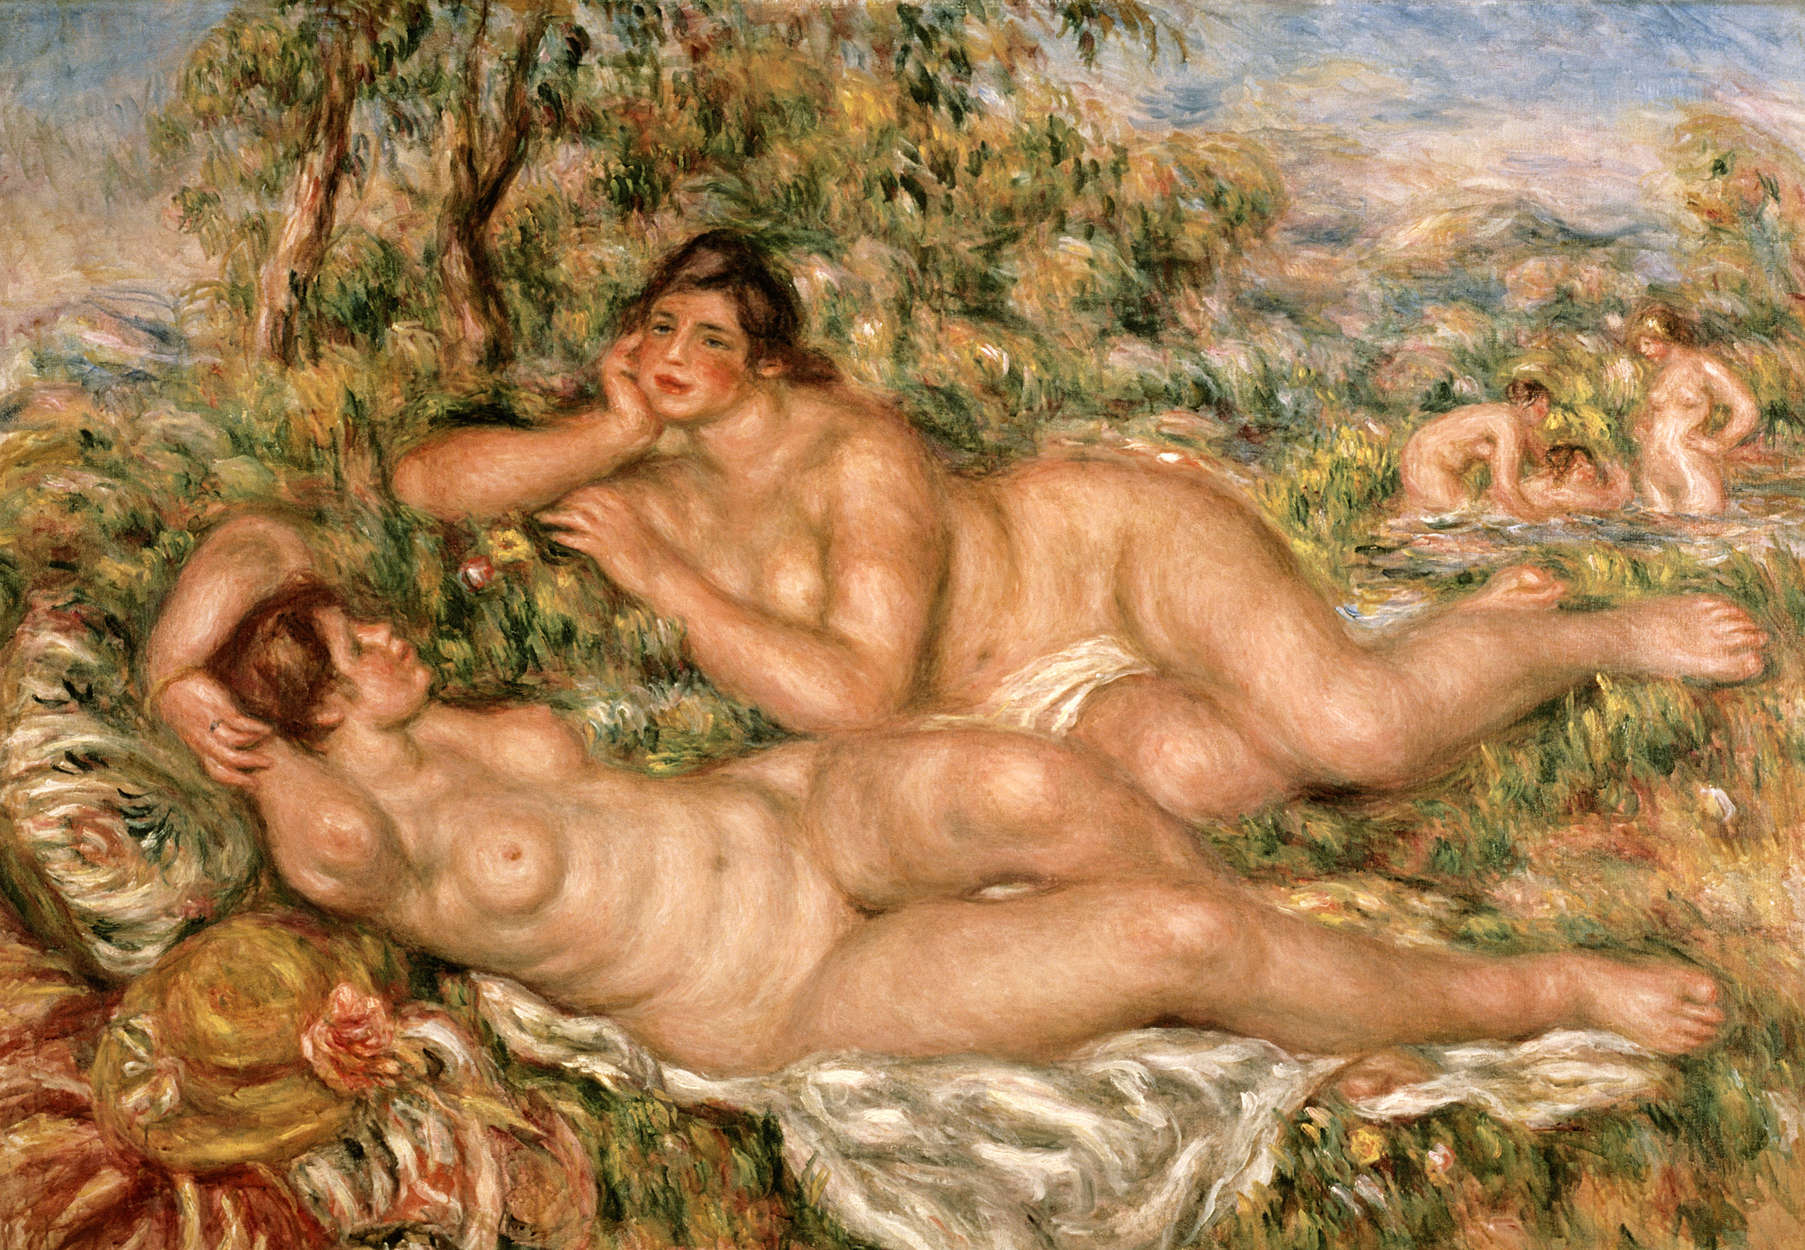             Fotomurali "Bagnanti" di Pierre Auguste Renoir
        